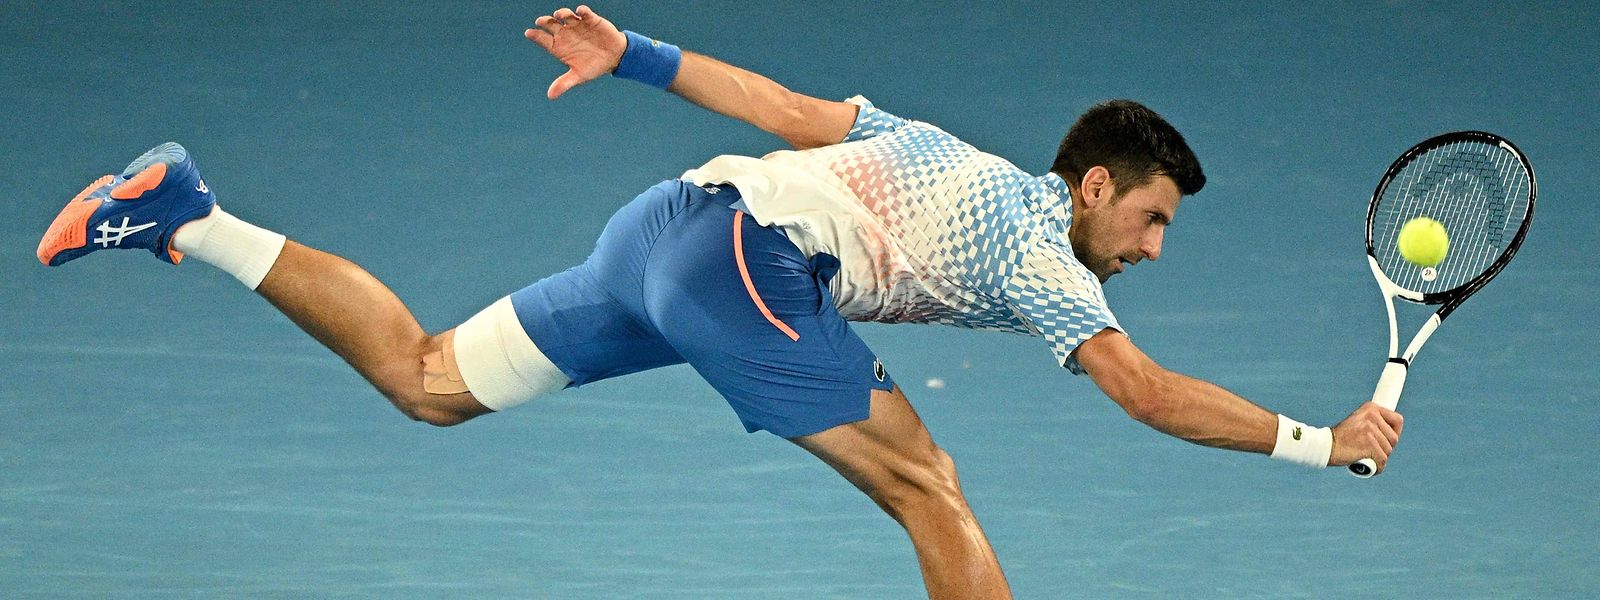 Novak Djokovic tritt bislang bei den Australian Open sehr souverän auf und lässt kaum eine Schwäche erkennen.